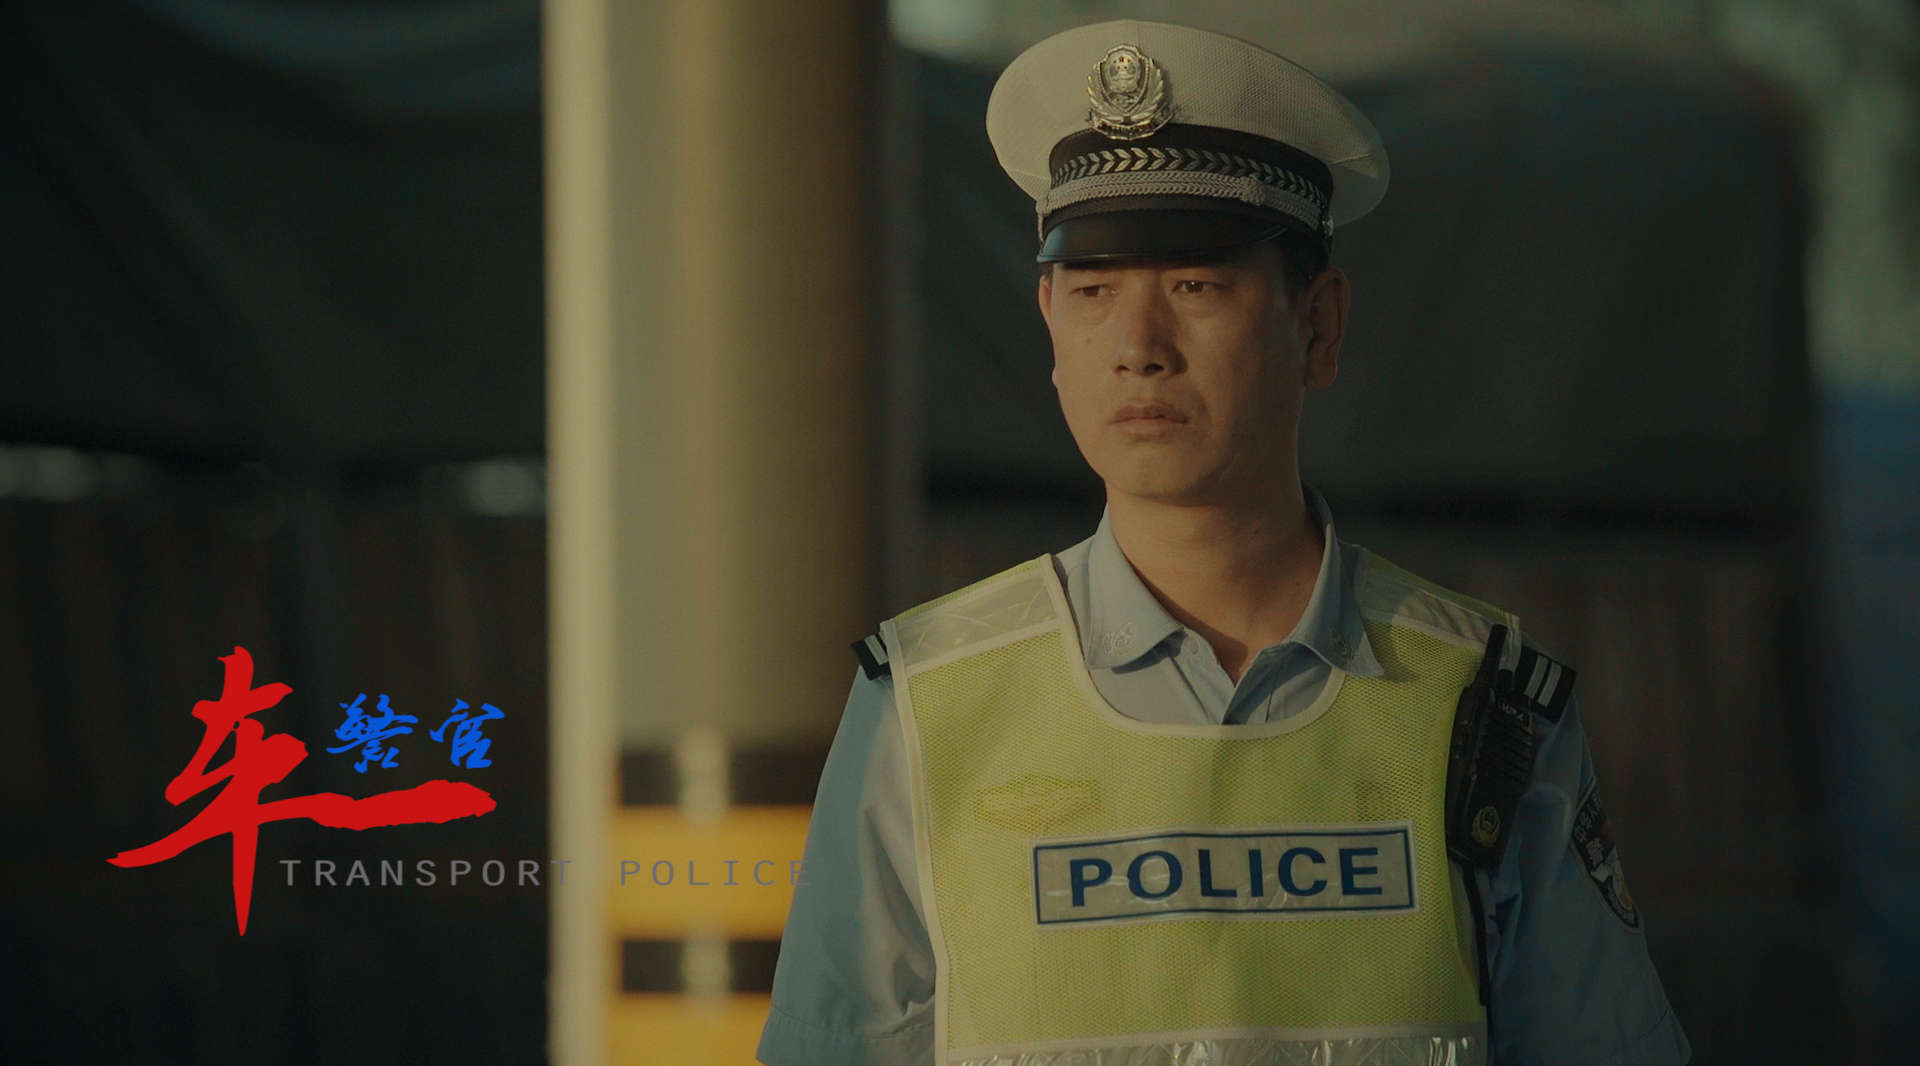 长武公安交警价值观系列纪录片《车警官》05